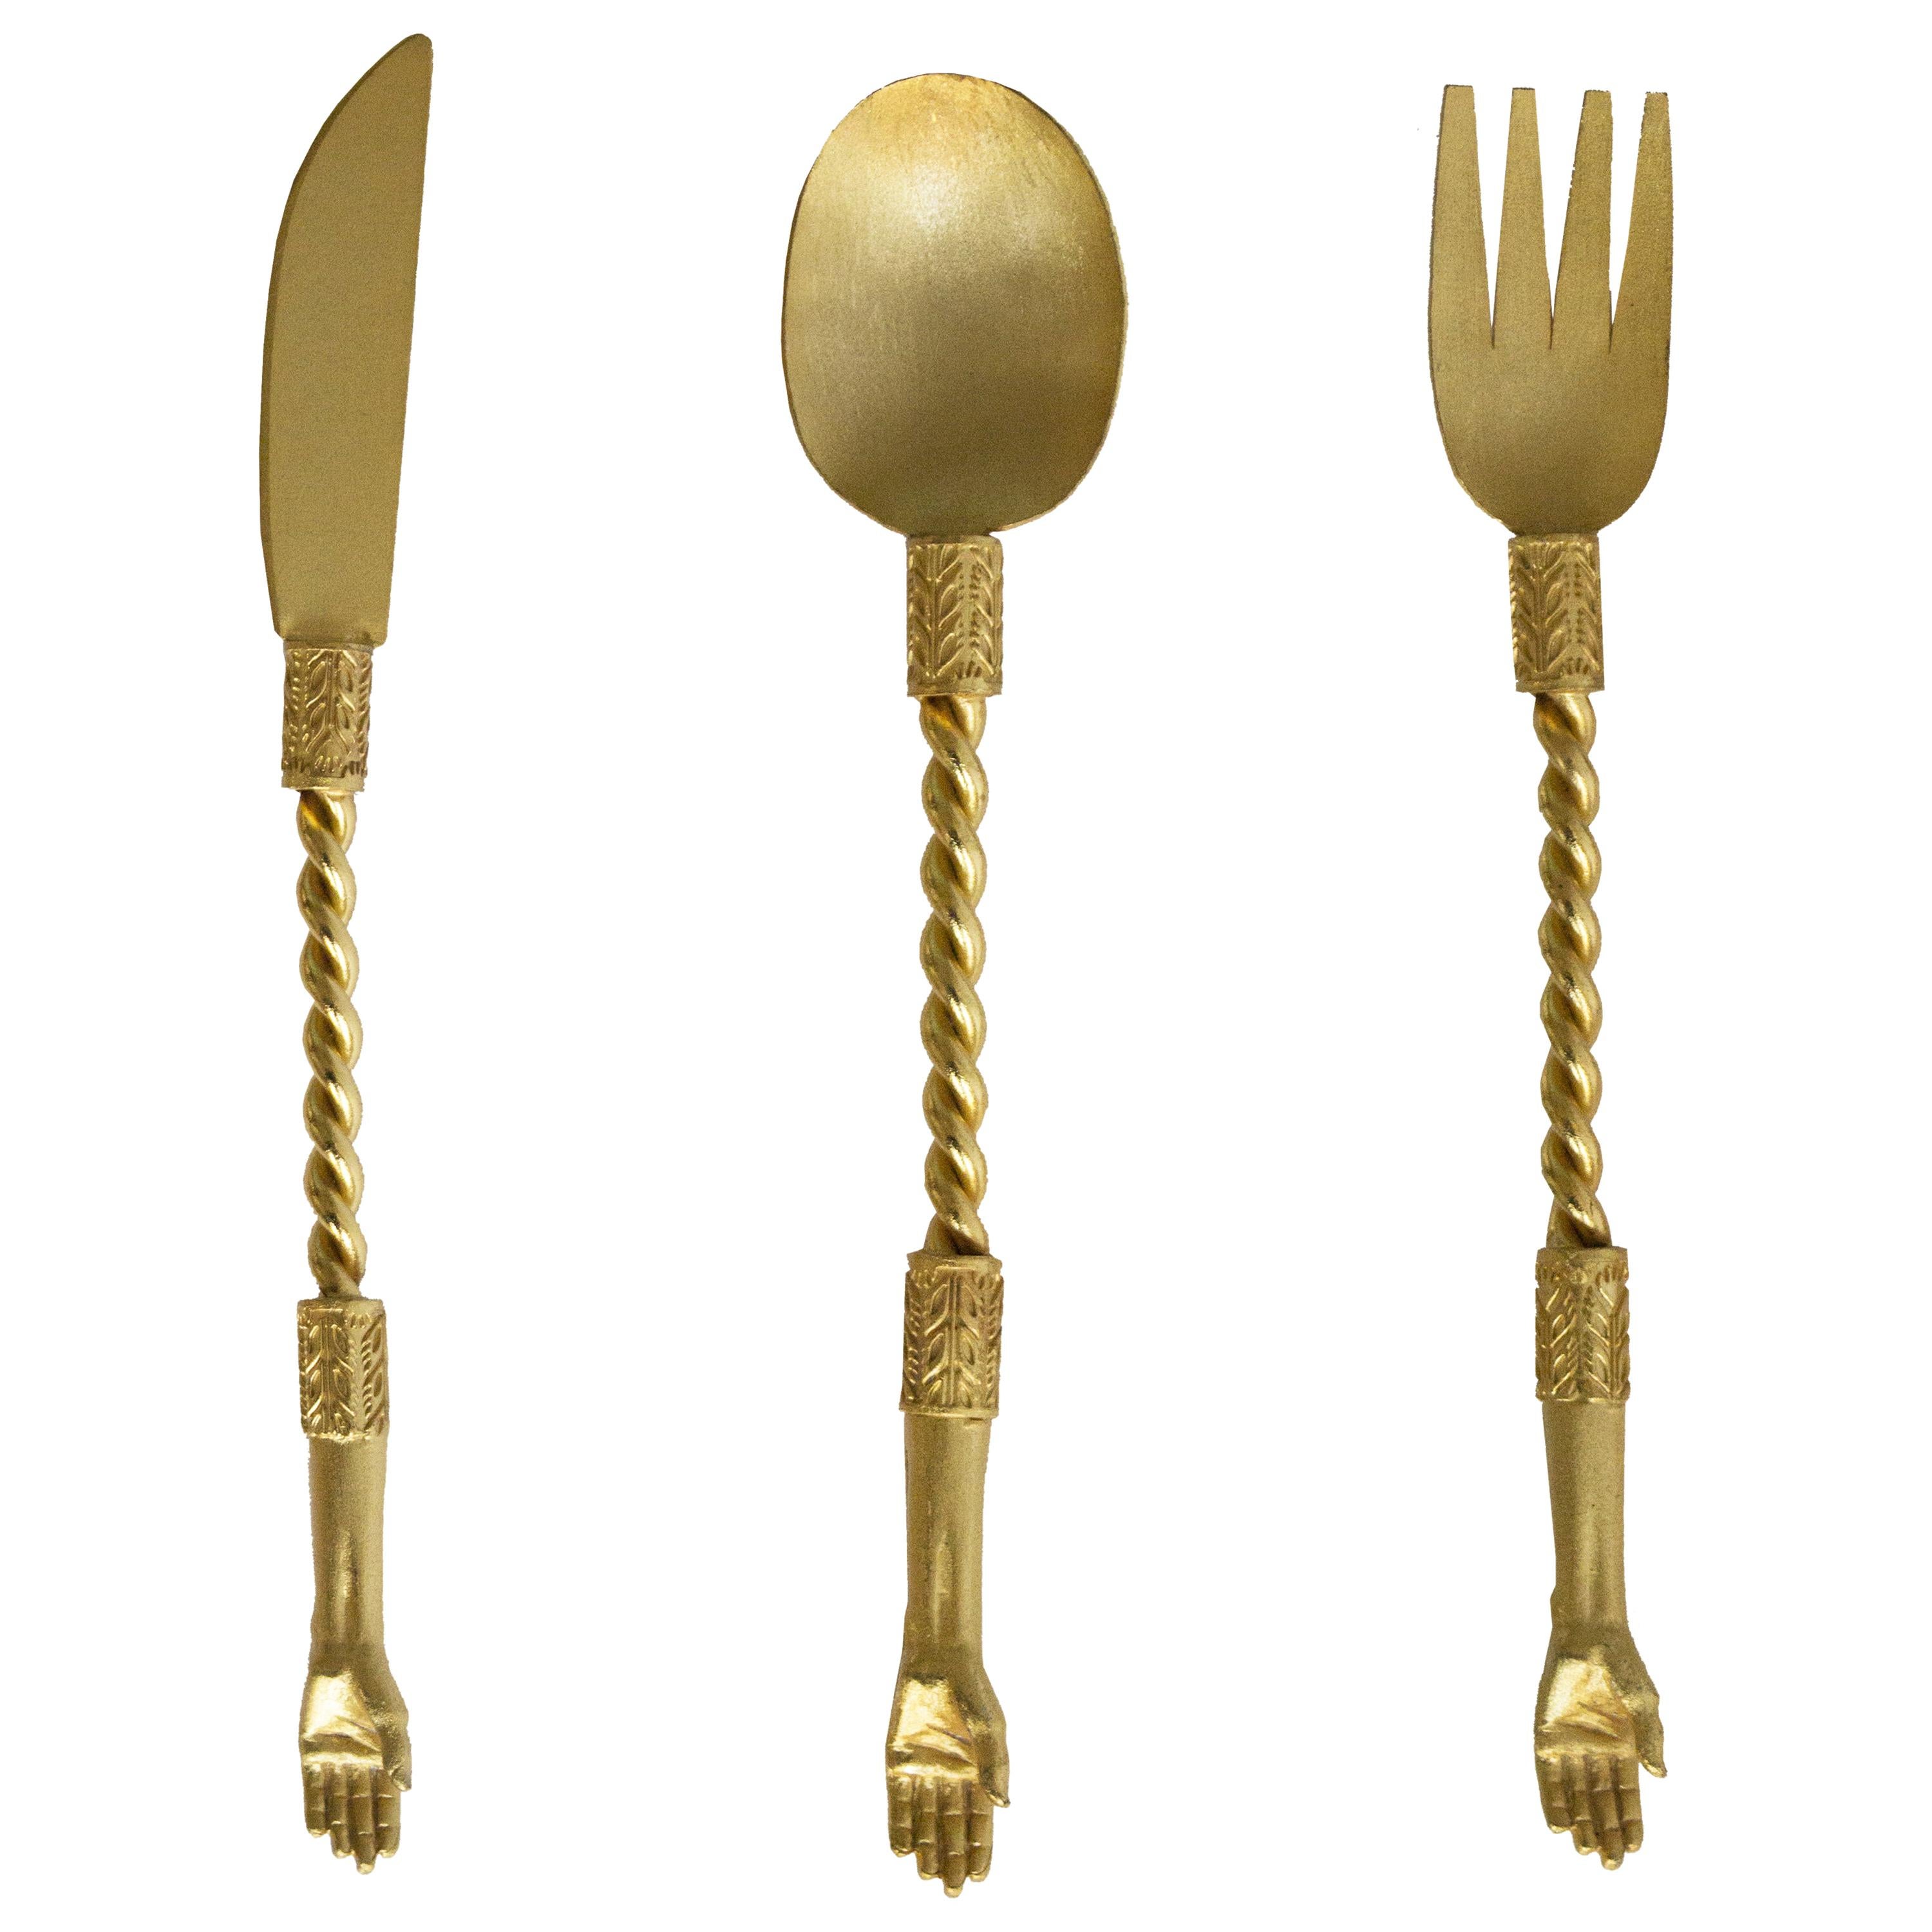 Contemporary Cutlery Servers Golden Plated Handcrafted Italy Natalia Criado en vente